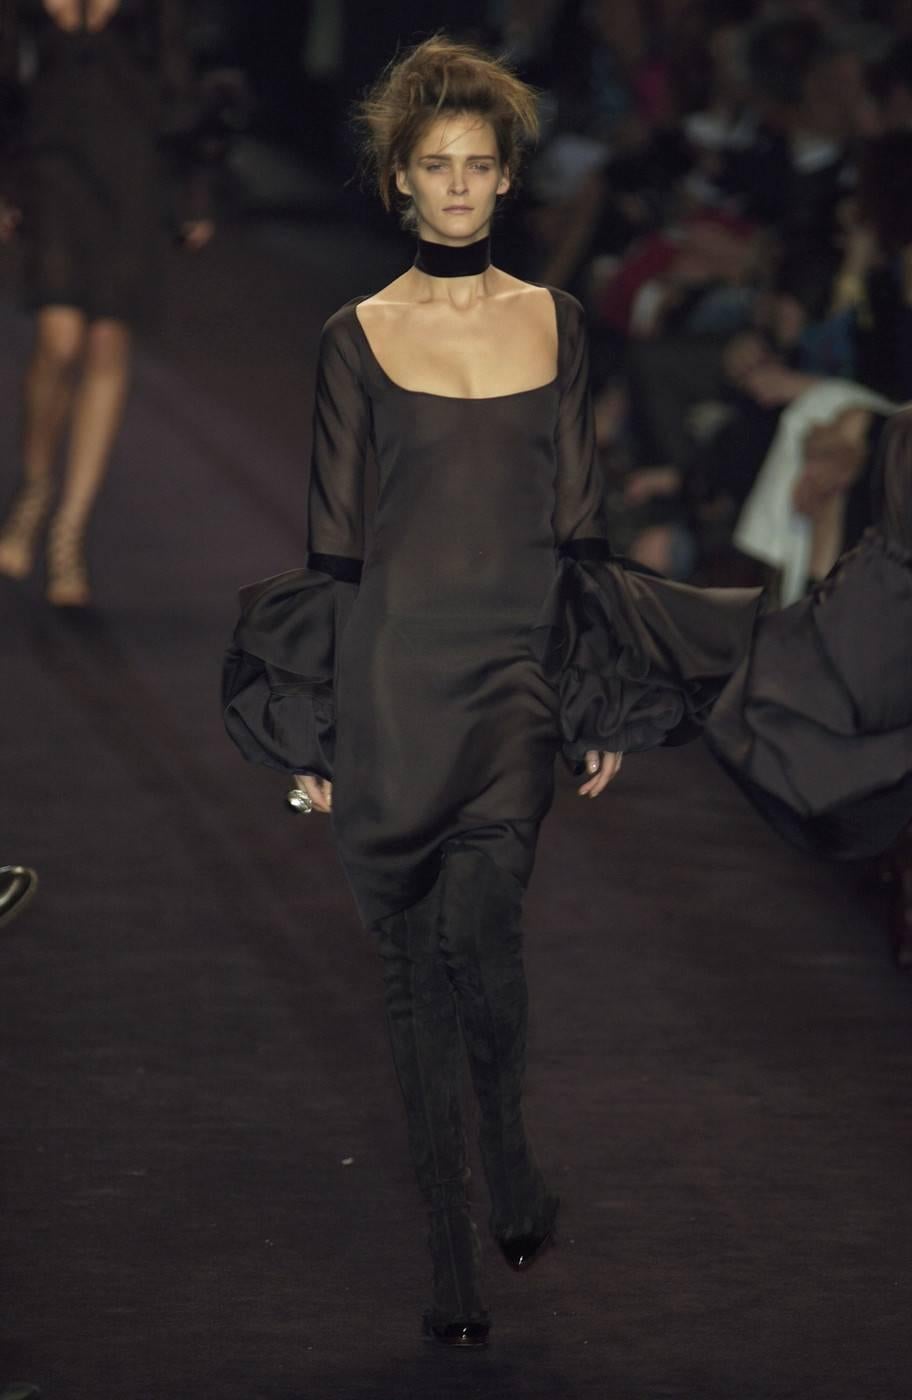 Black Tom Ford for Yves Saint Laurent Fall 2002 RTW Silk & Velvet dress Cate Blanchett